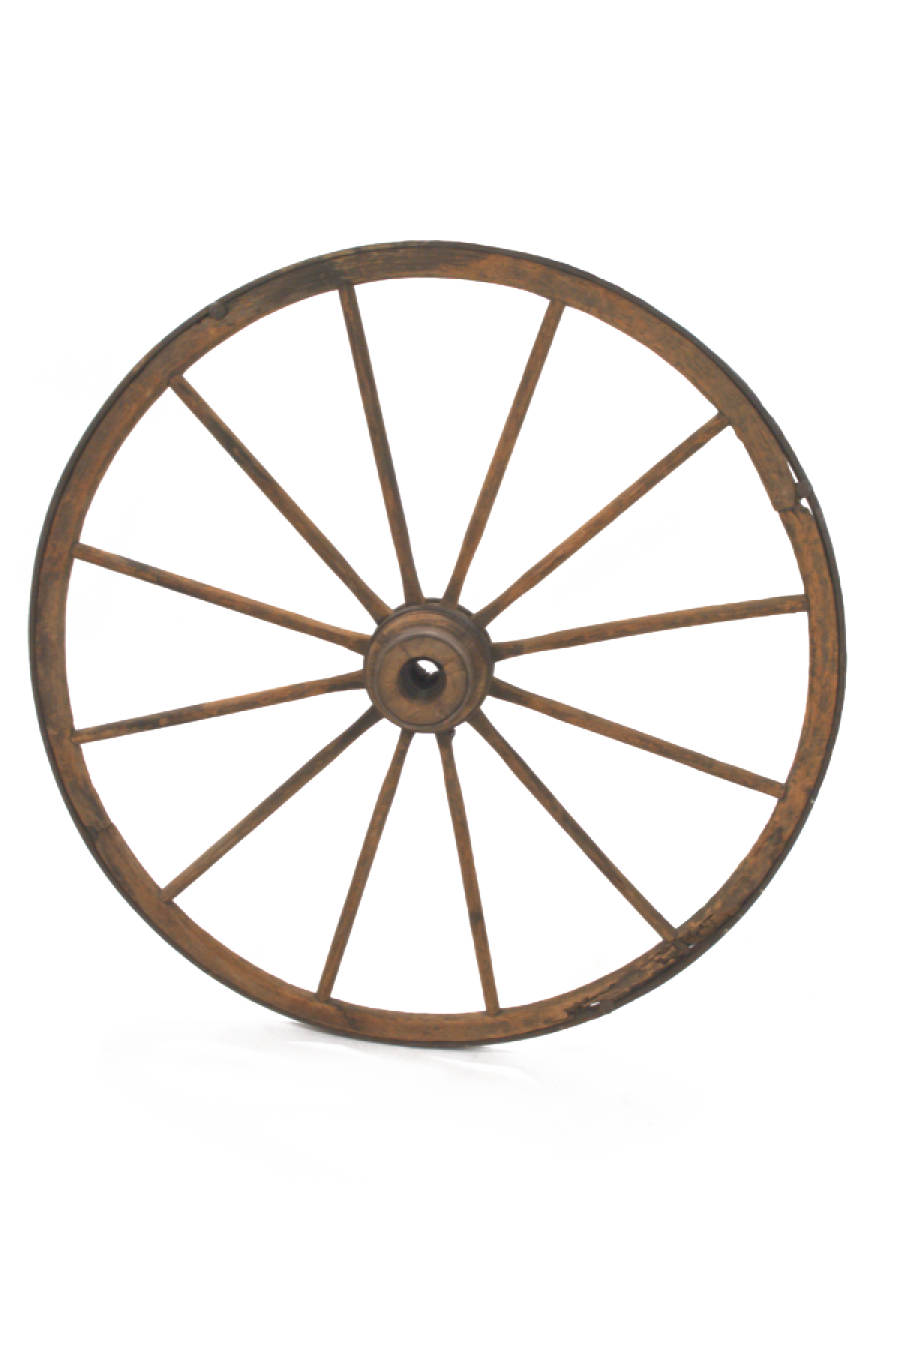 Immagine del wagon rotella di download dellimmagine